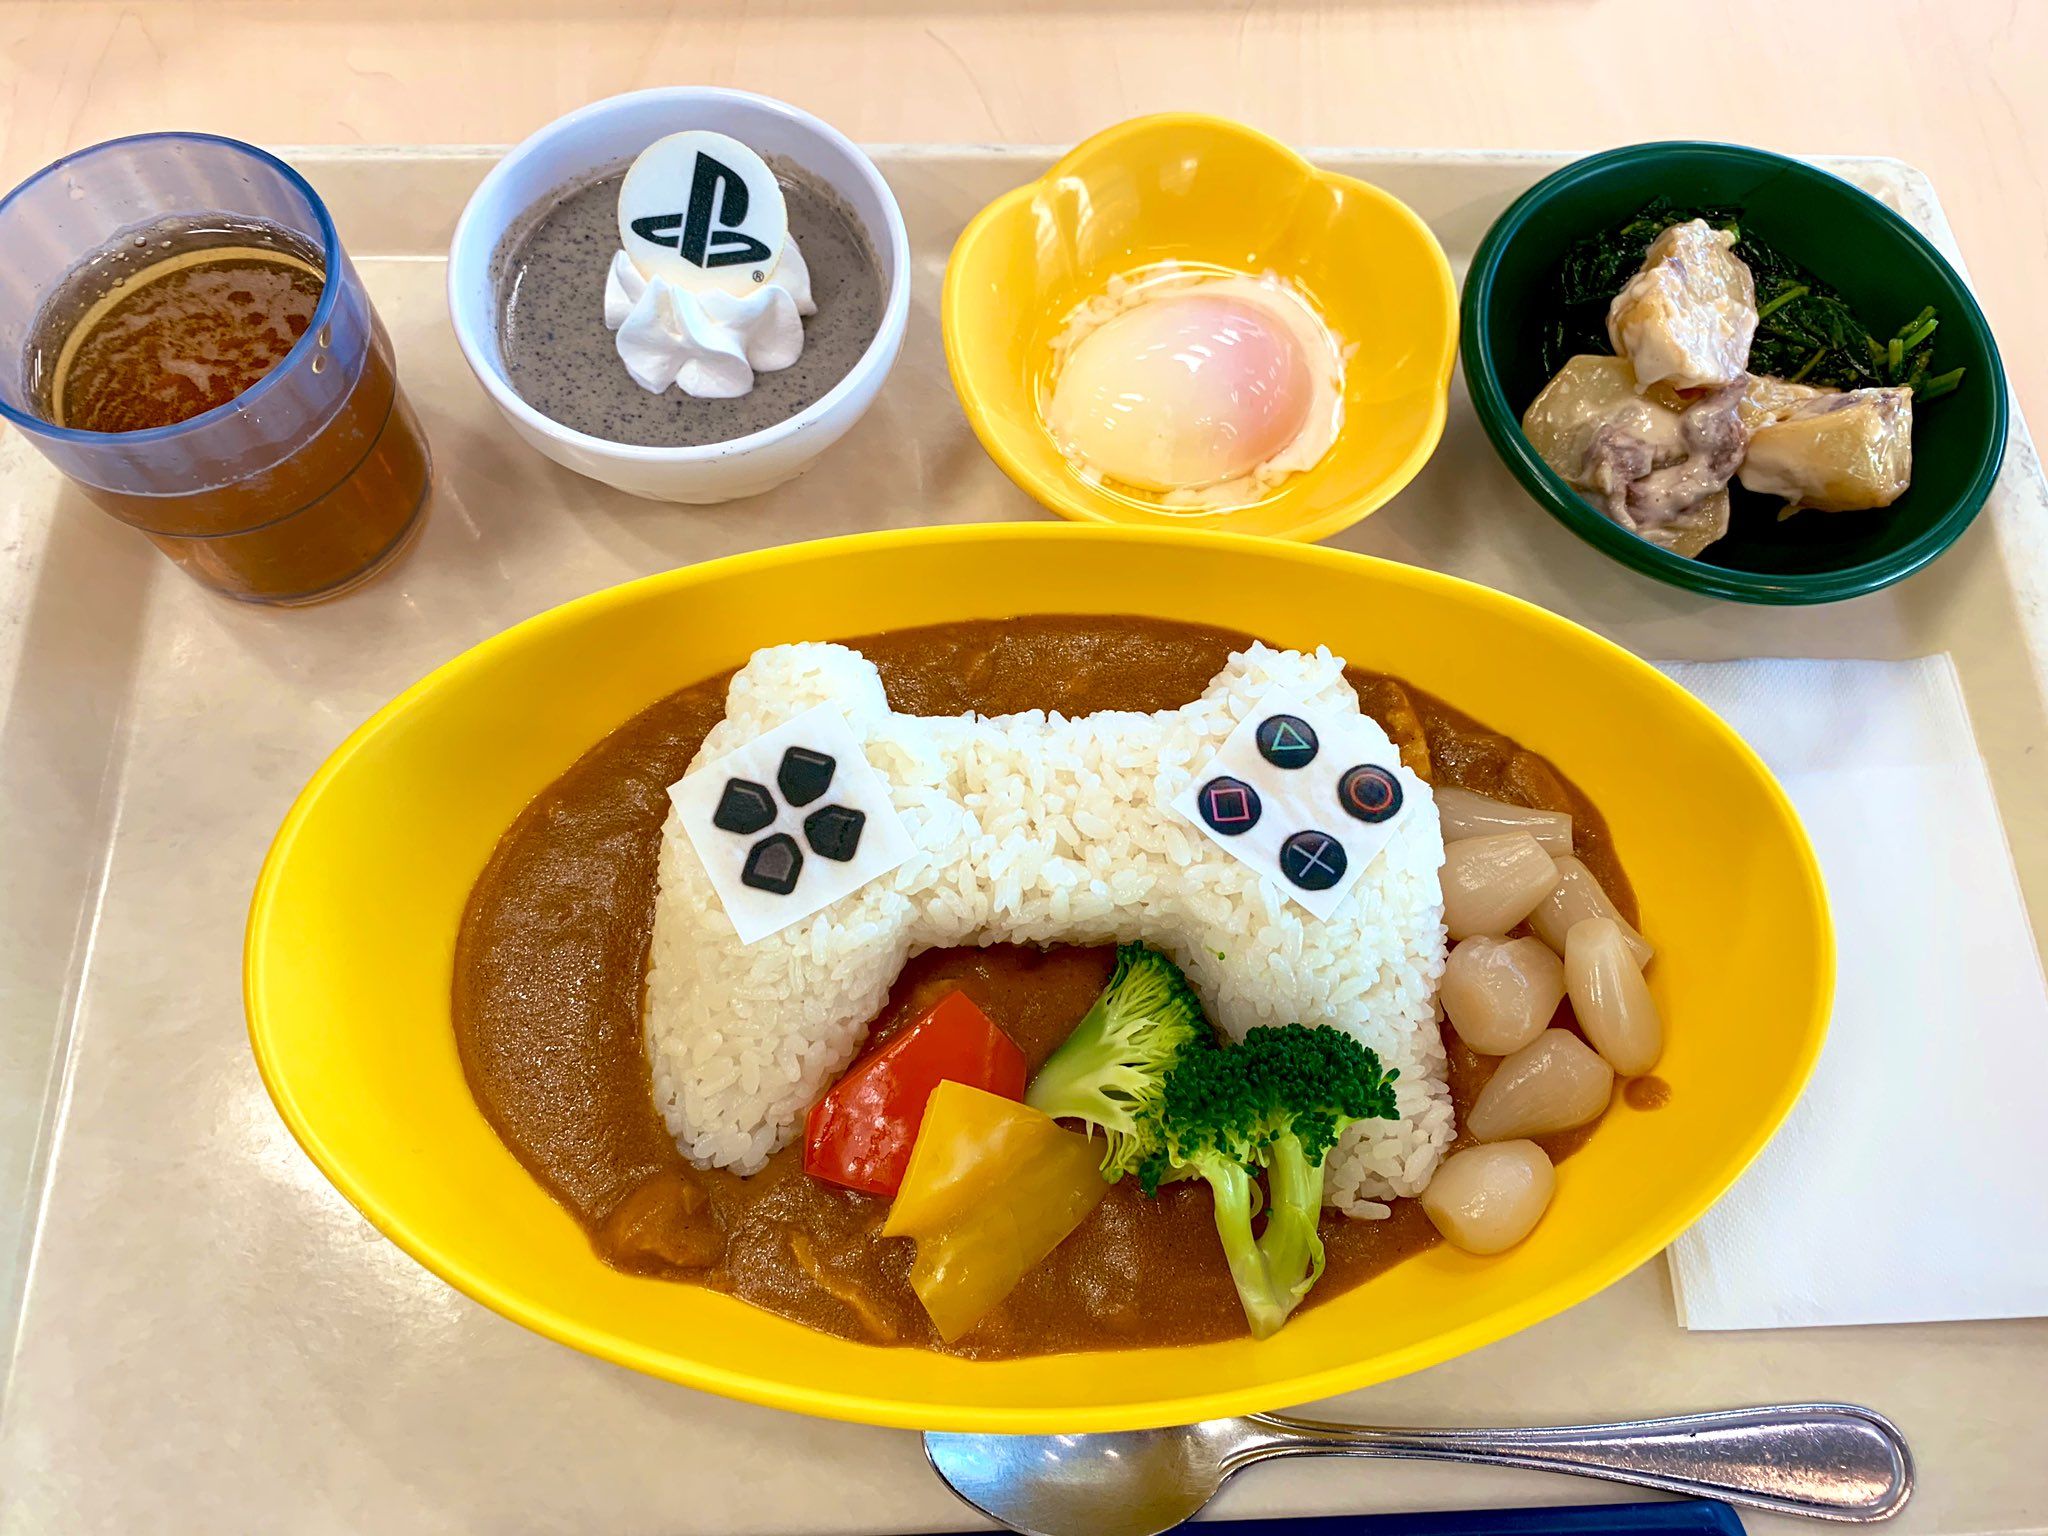 Праздничный обед в столовой Sony | Источник: twitter.com/KojiPro2015_EN